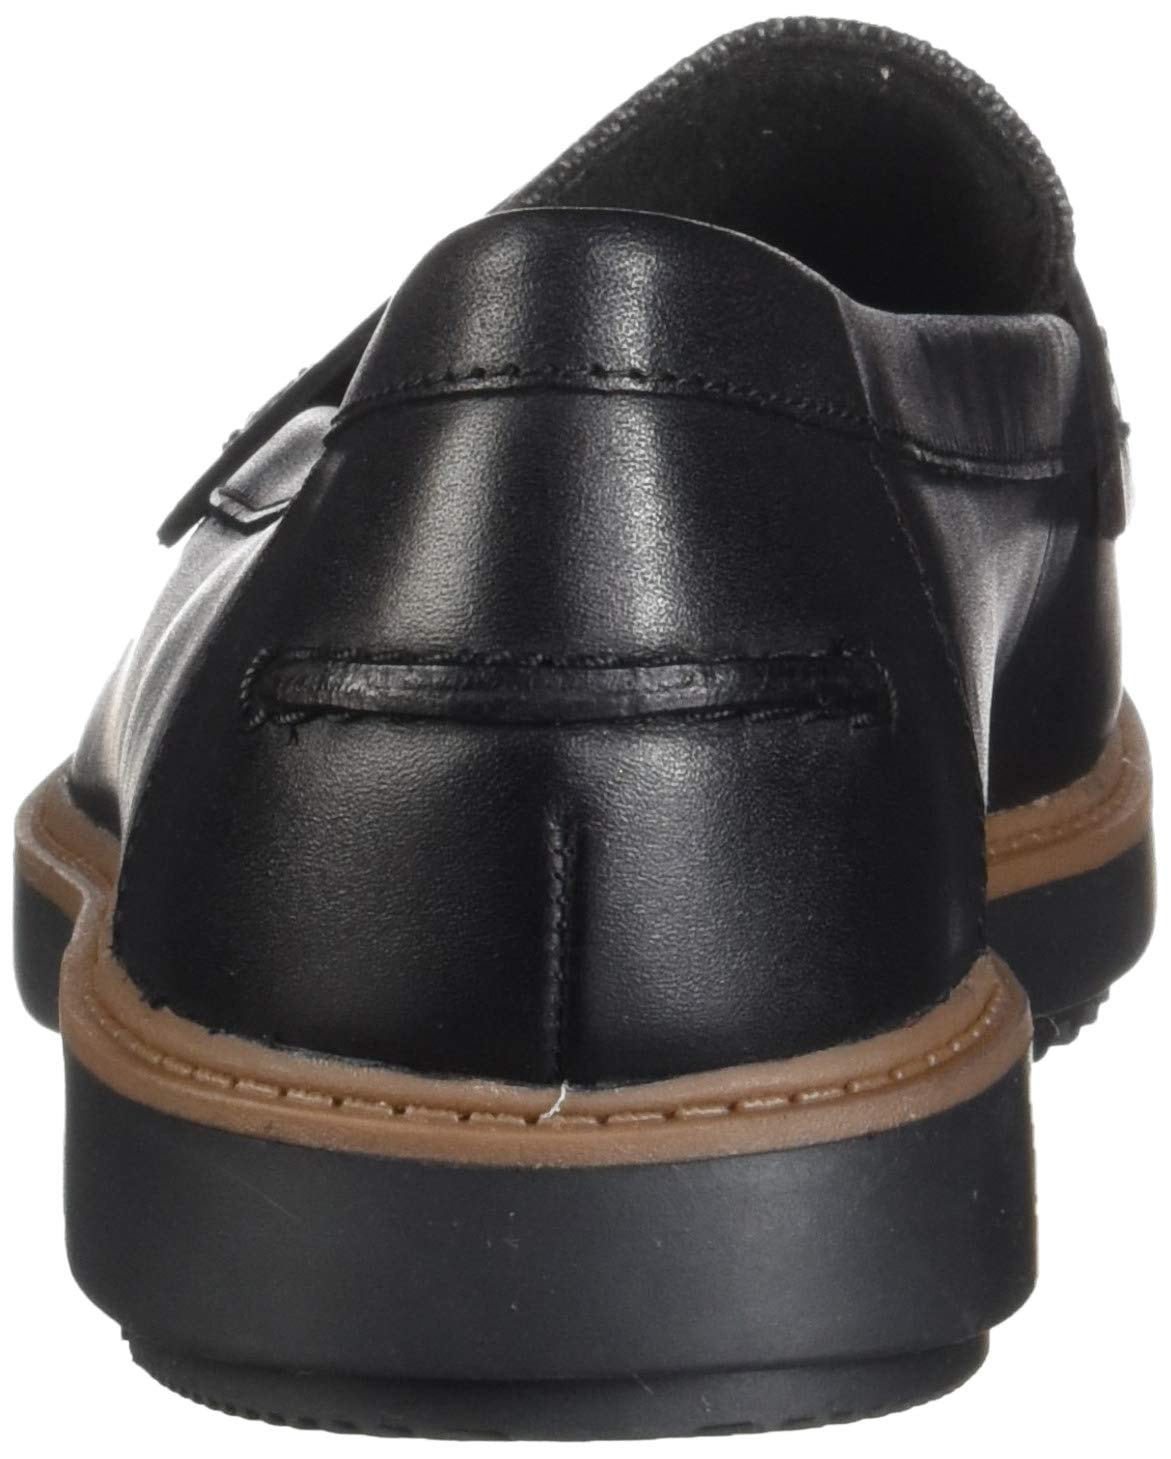 clarks raisie eletta women's penny loafers